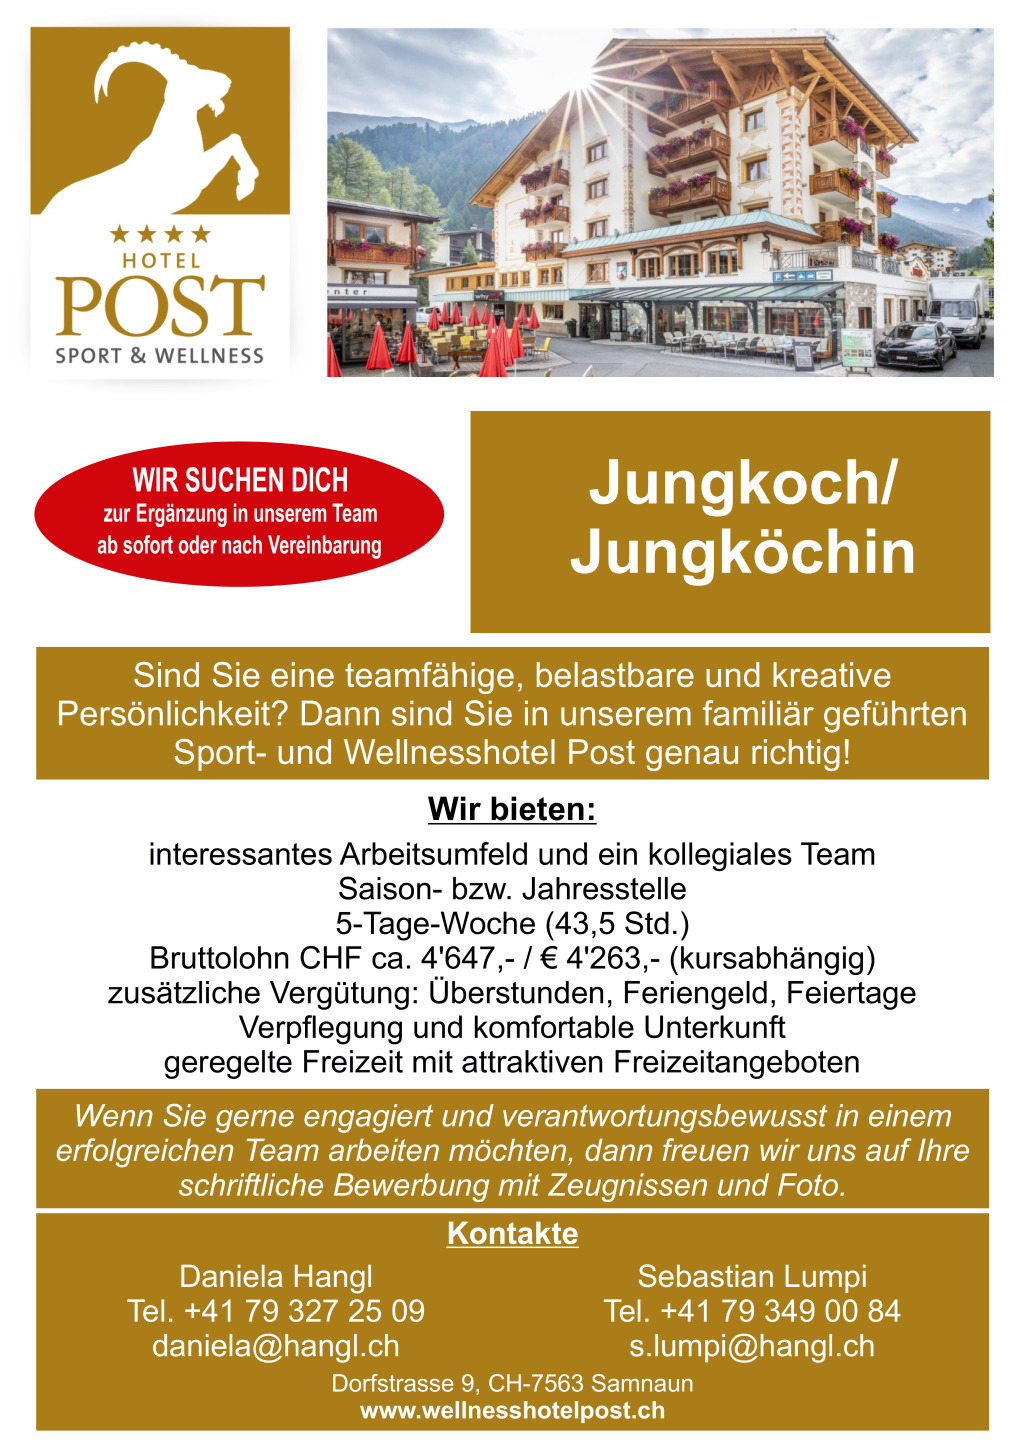 Jungkoch / Jungköchin - Vollzeit